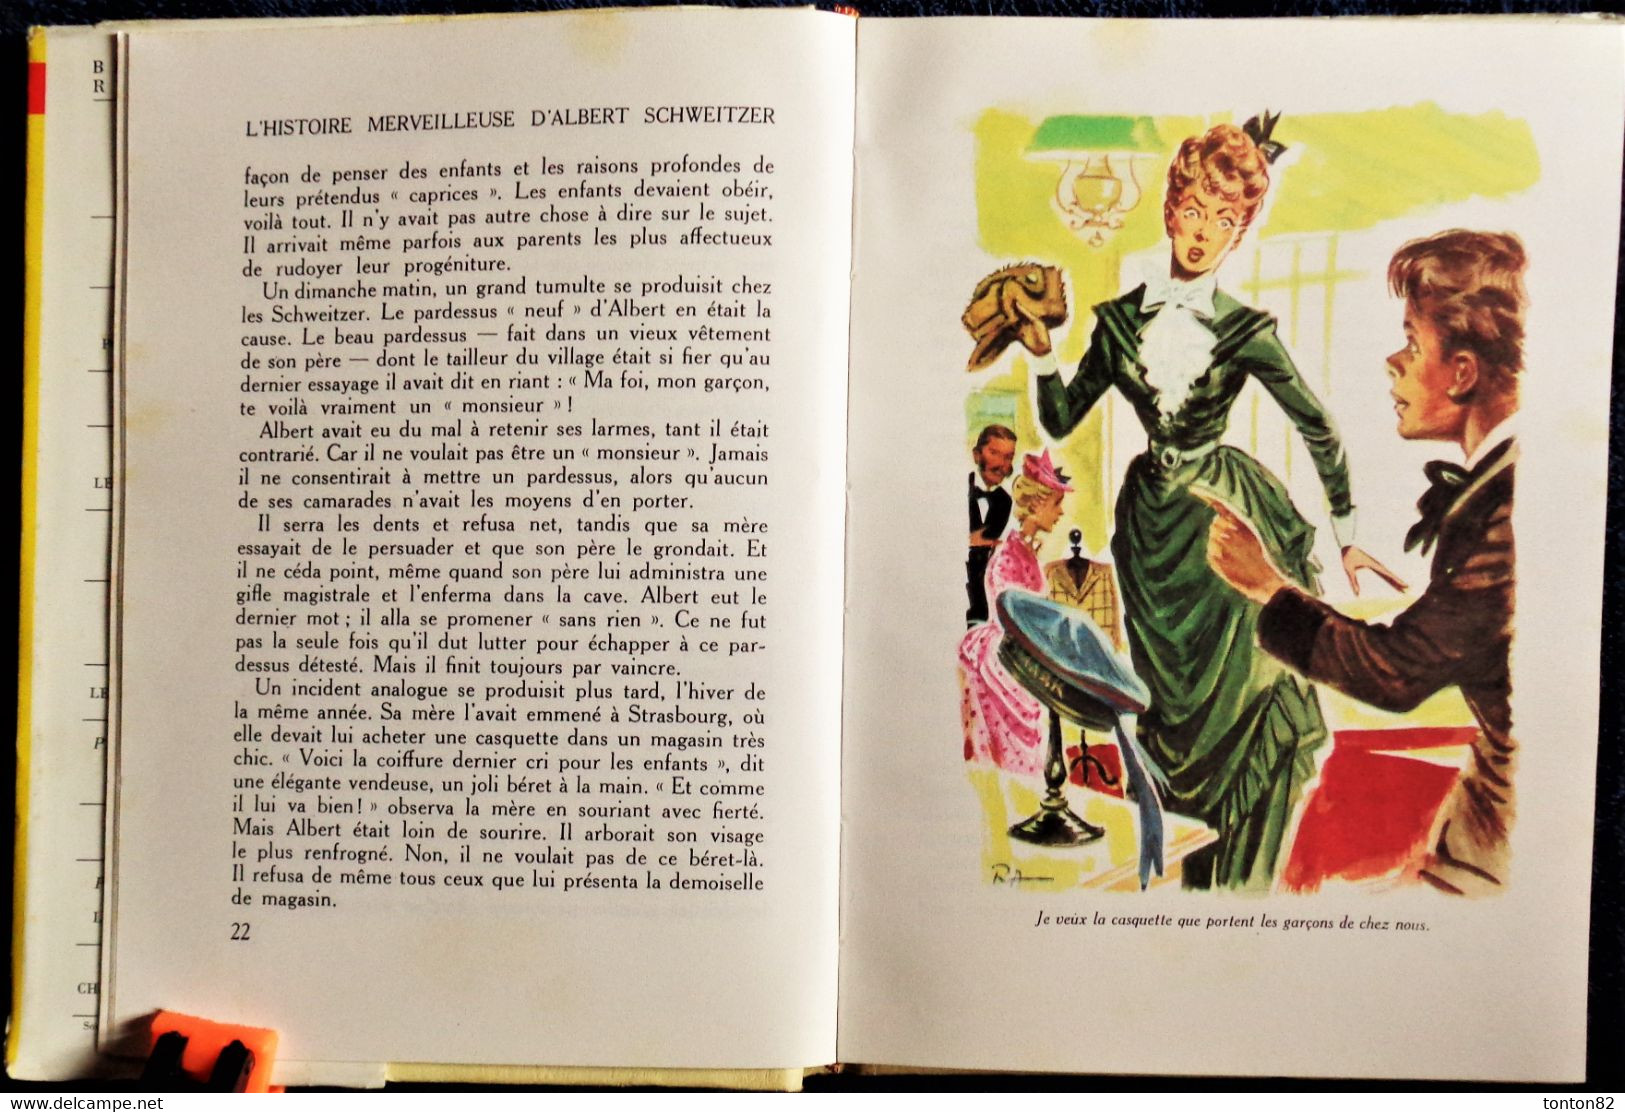 Titt Fasmer Dahl - L' Histoire Merveilleuse D' Albert Schweitzer - Rouge Et Or Souveraine N° 542- ( 1955 ) . - Bibliothèque Rouge Et Or